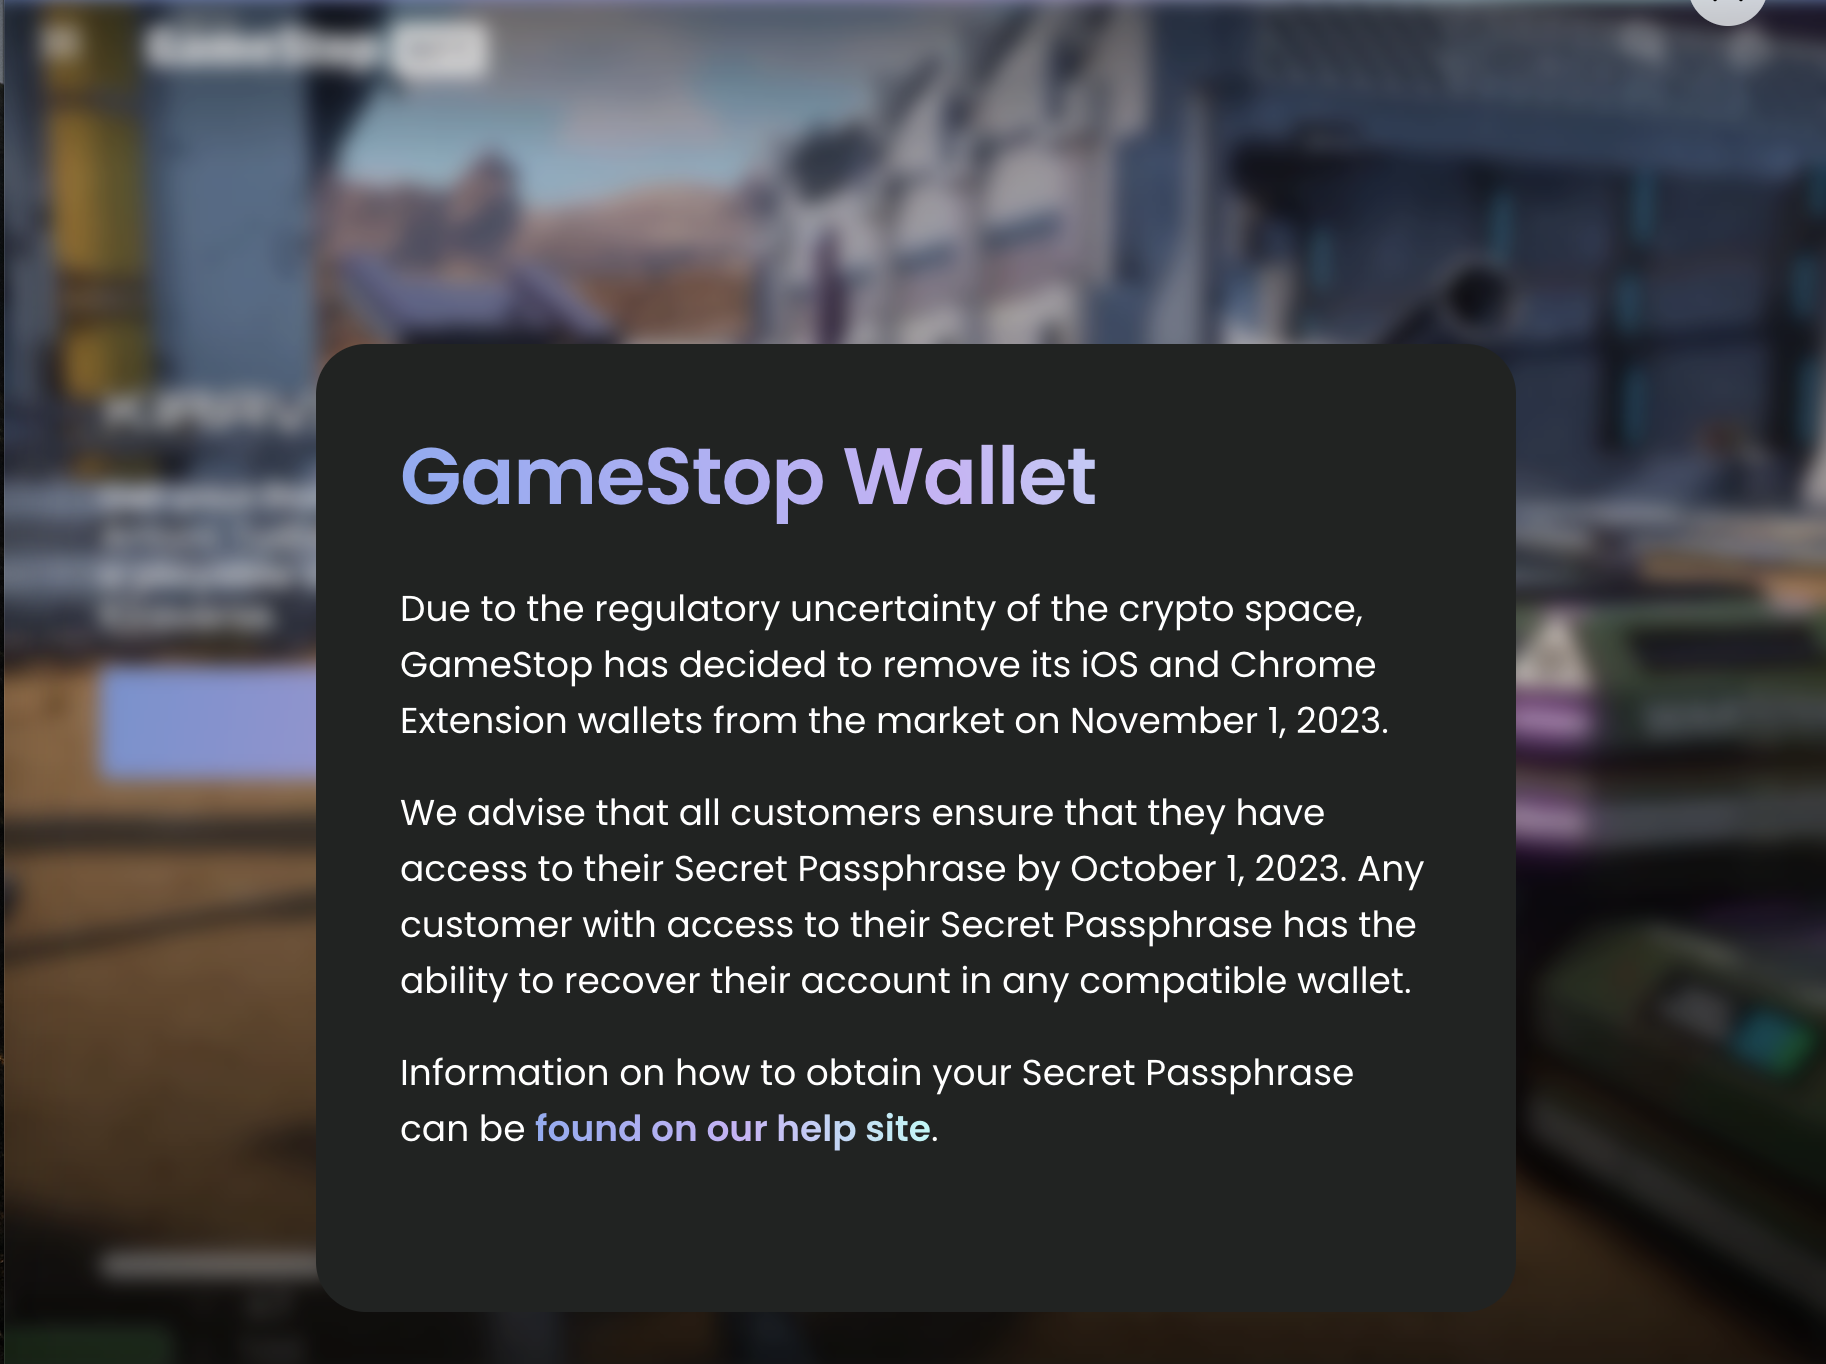 GameStop's notice to customers of the shutdown of GameStop Wallet.